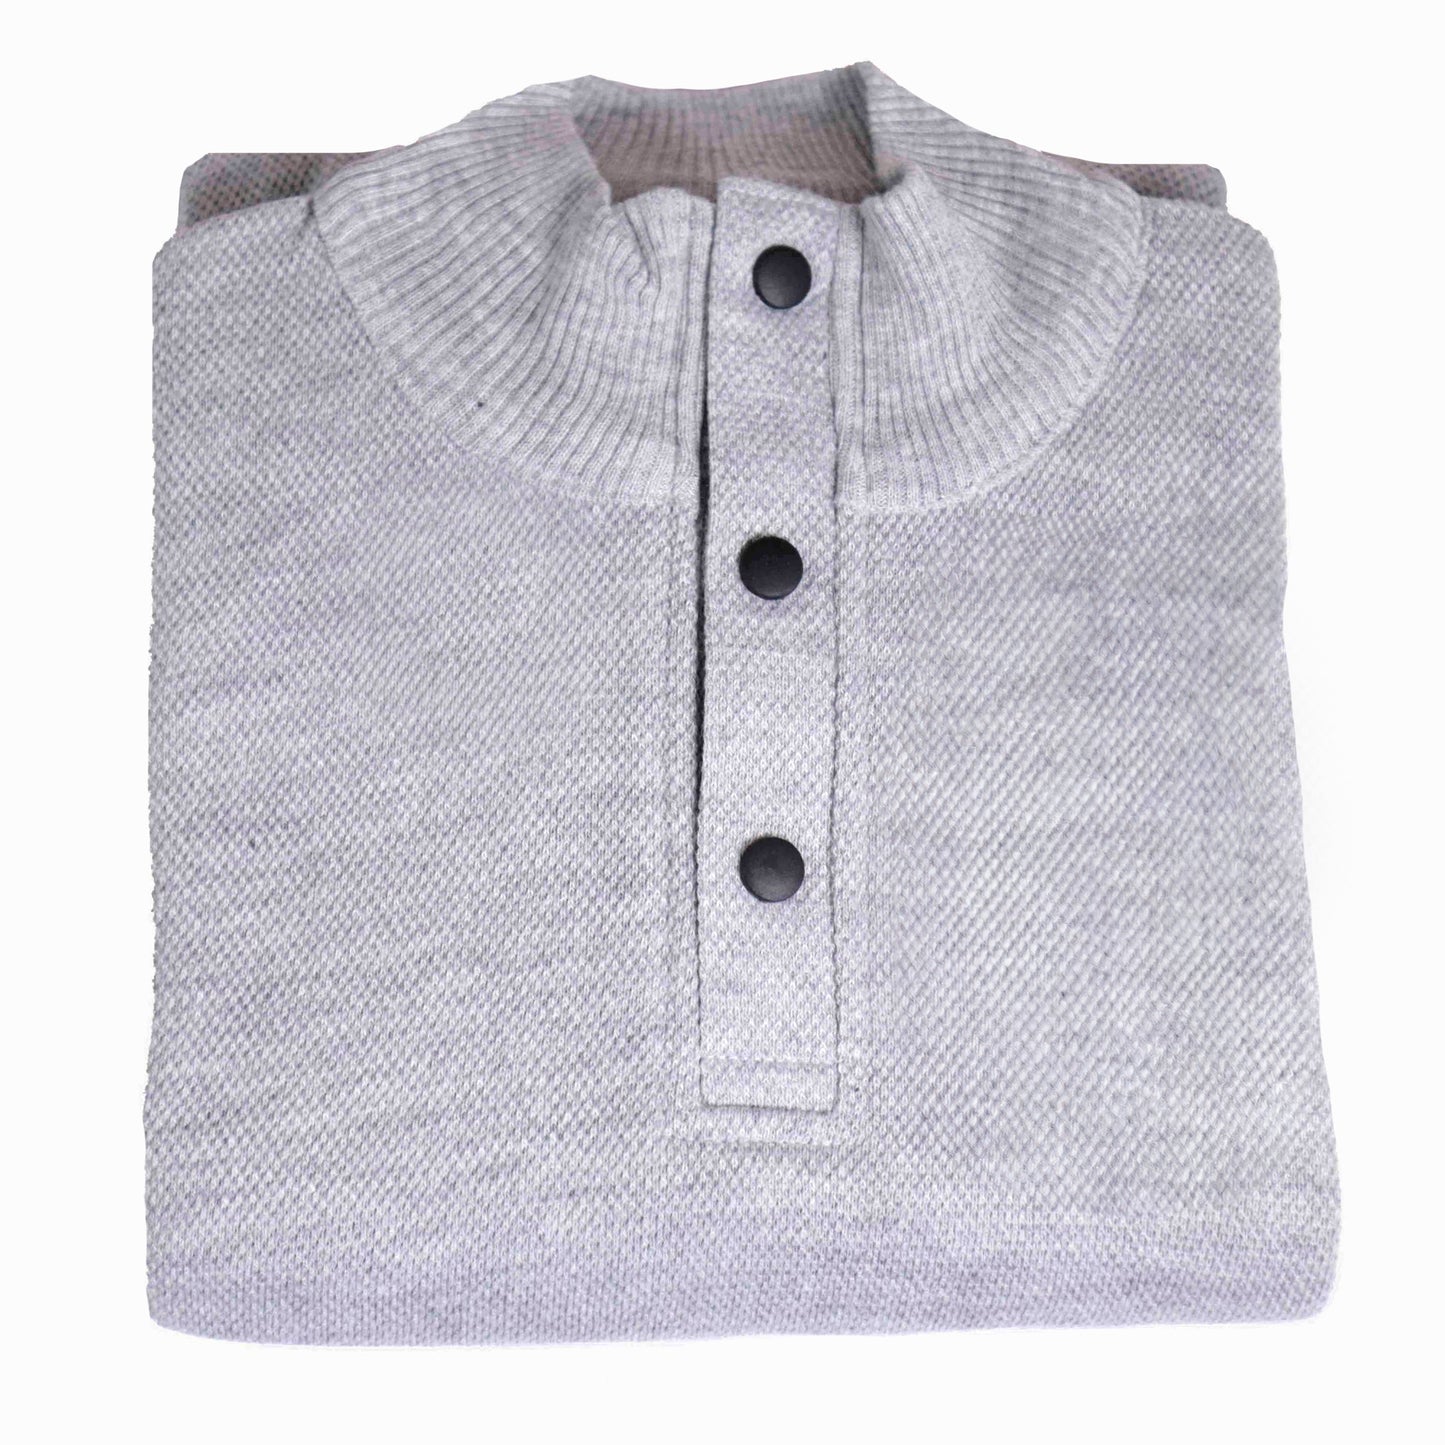 High/Turtle Neck Woolen Designer Sweater Grey